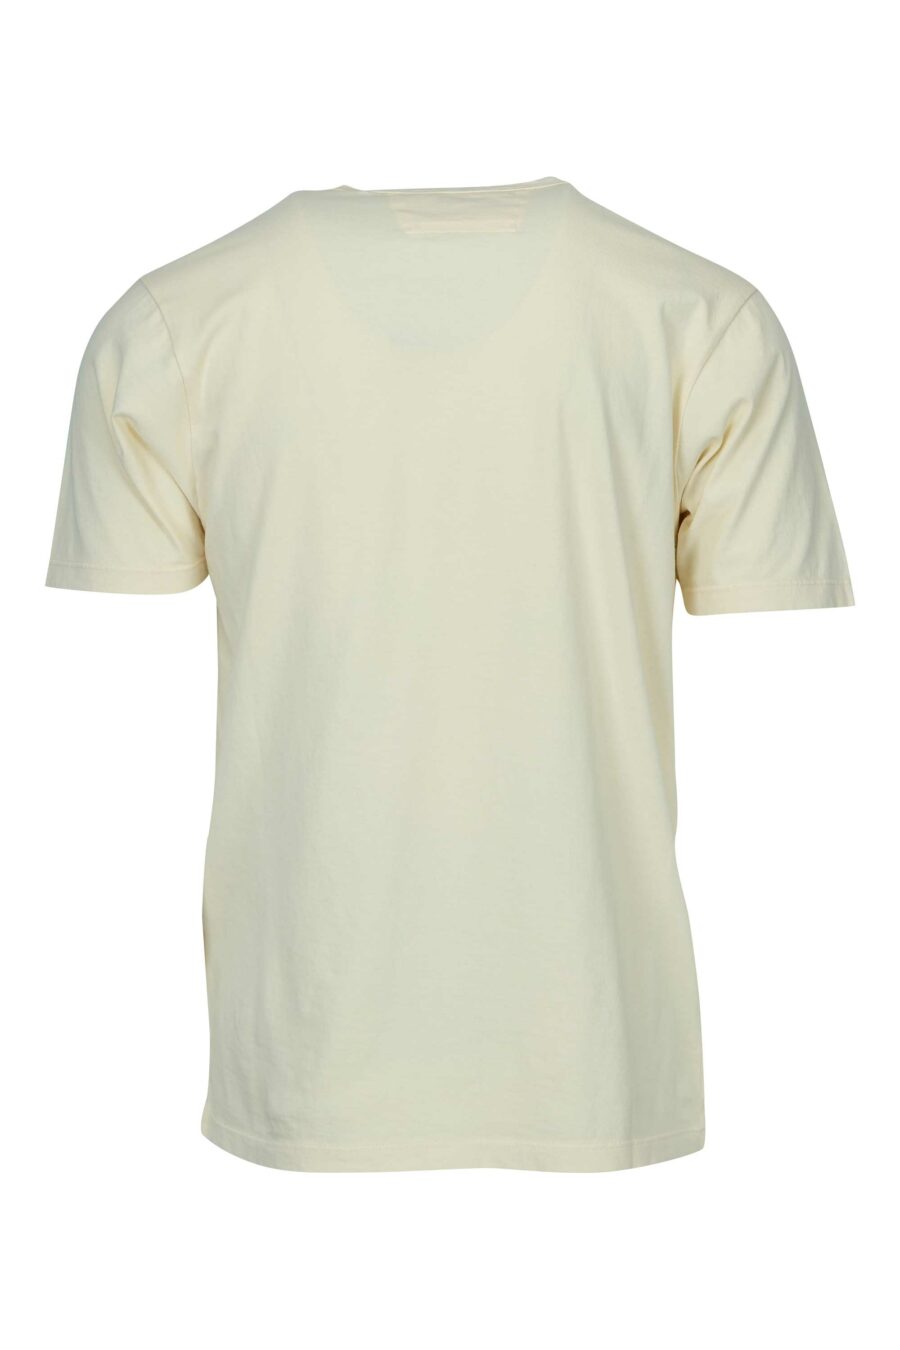 Camiseta beige con bolsillos y minilogo "cp" - 7620943766882 1